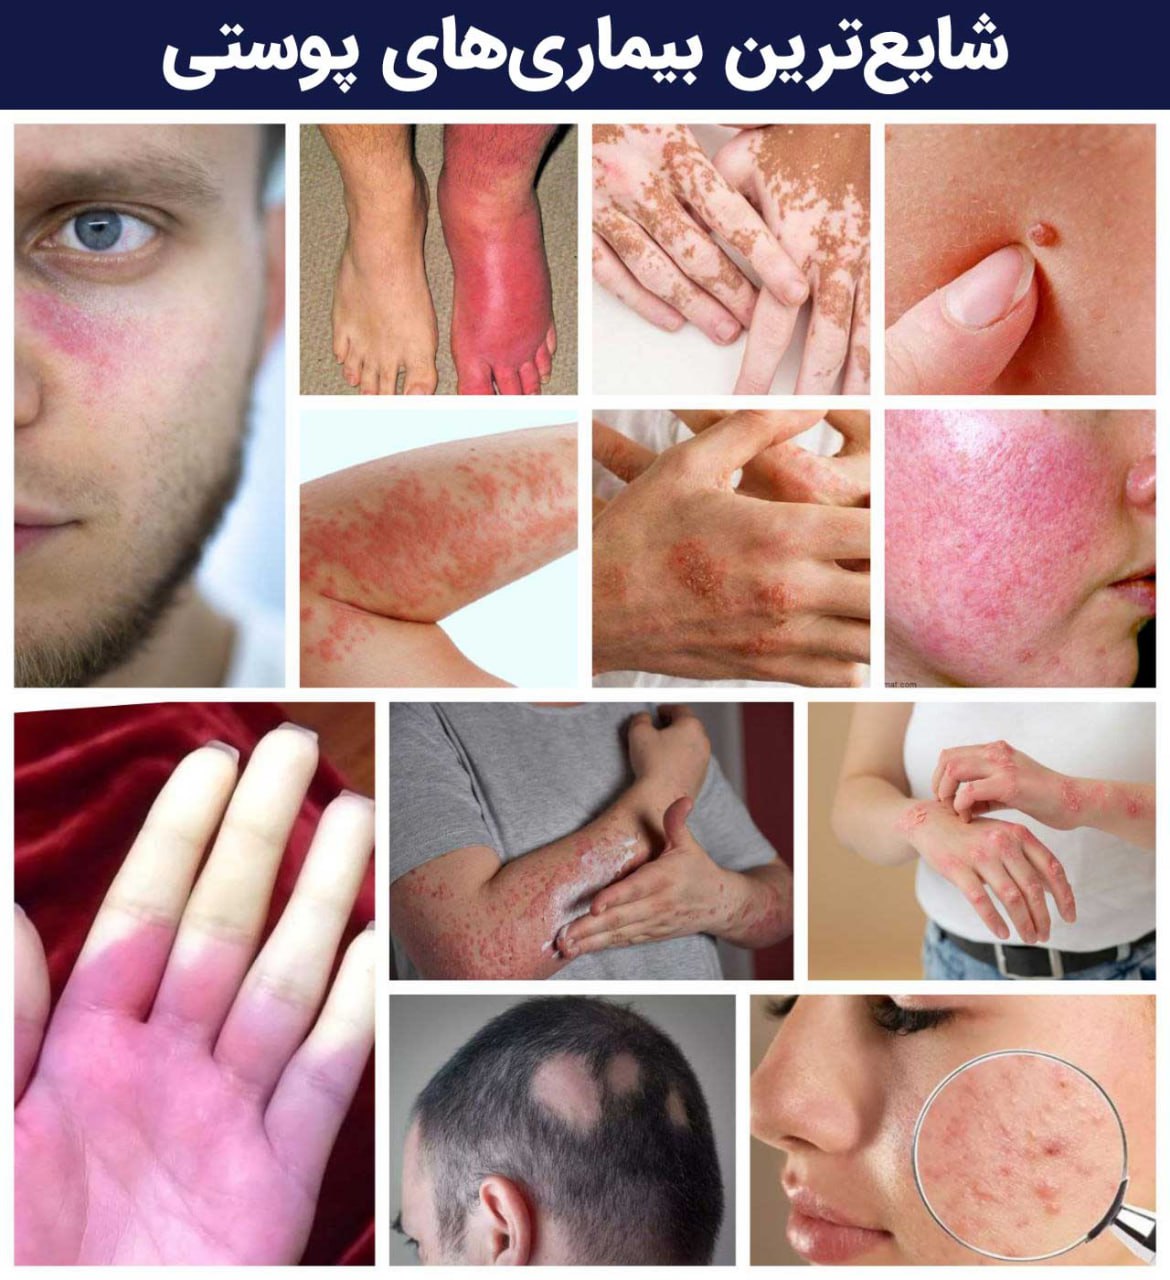 شایع ترین بیماری ها و مشکلات پوستی